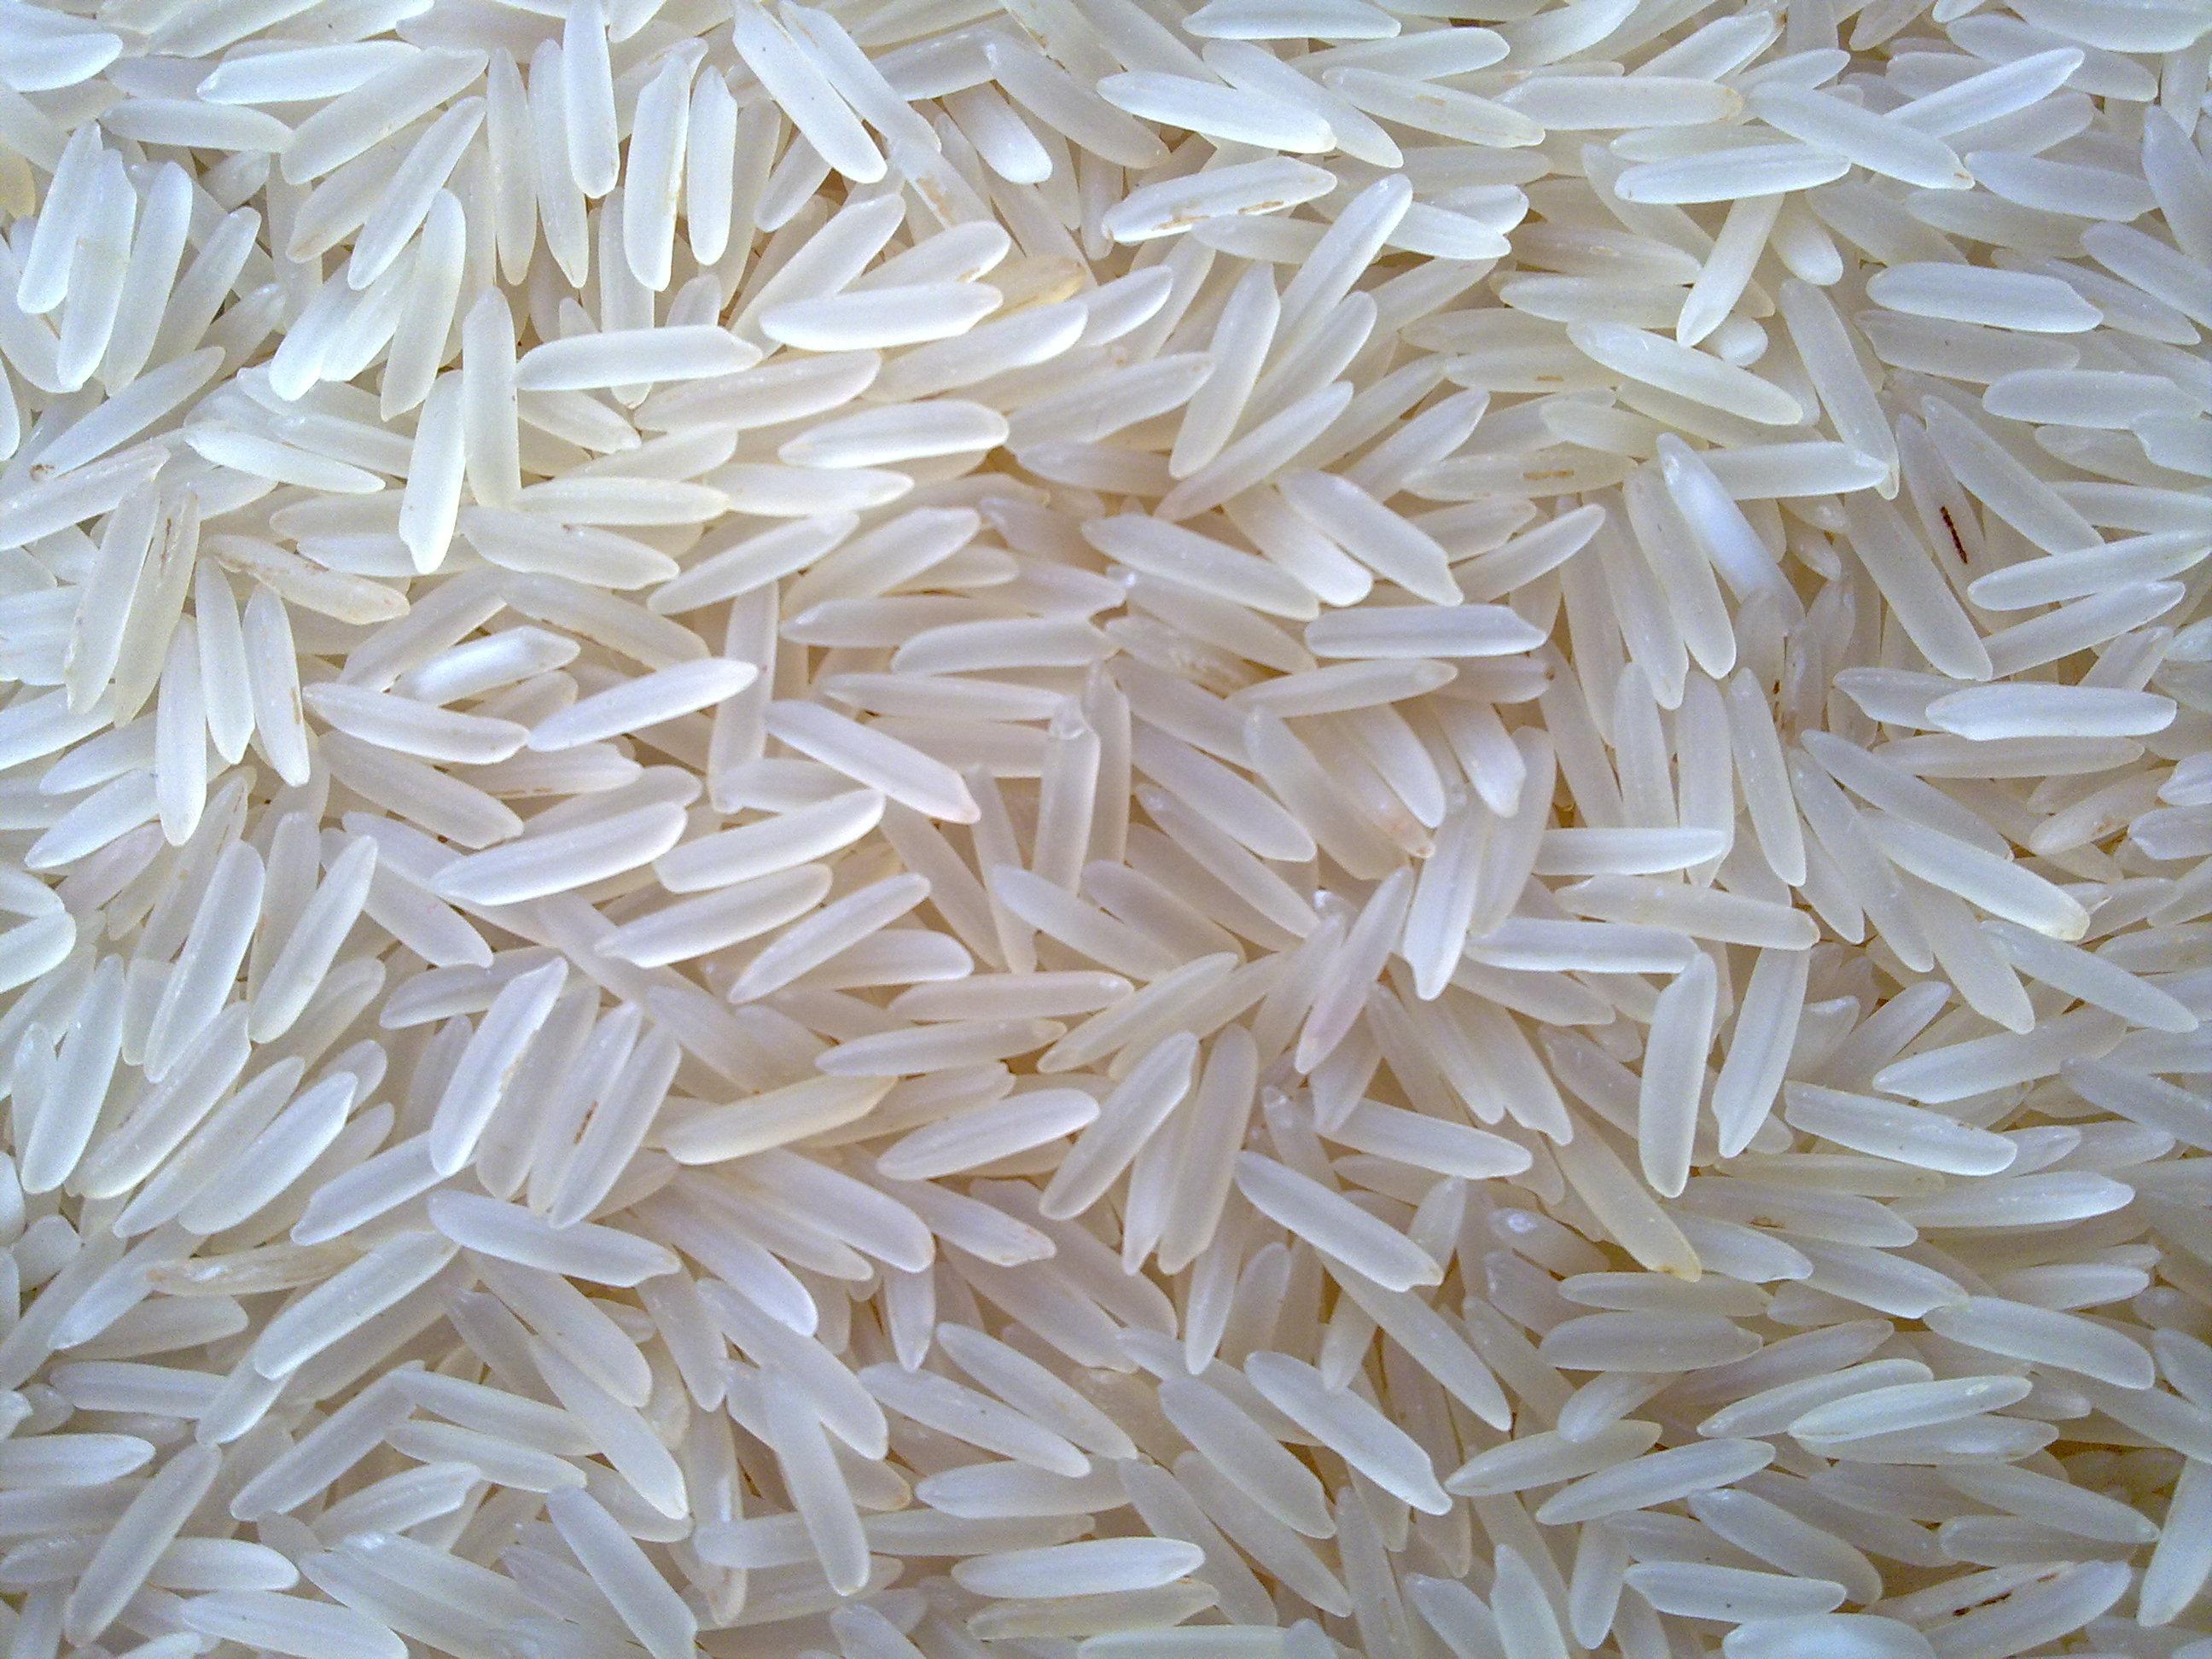 Em relação ao IIPR, a taxa cambial e o bom desempenho das exportações sustentaram os preços da soja, arroz e suínos.